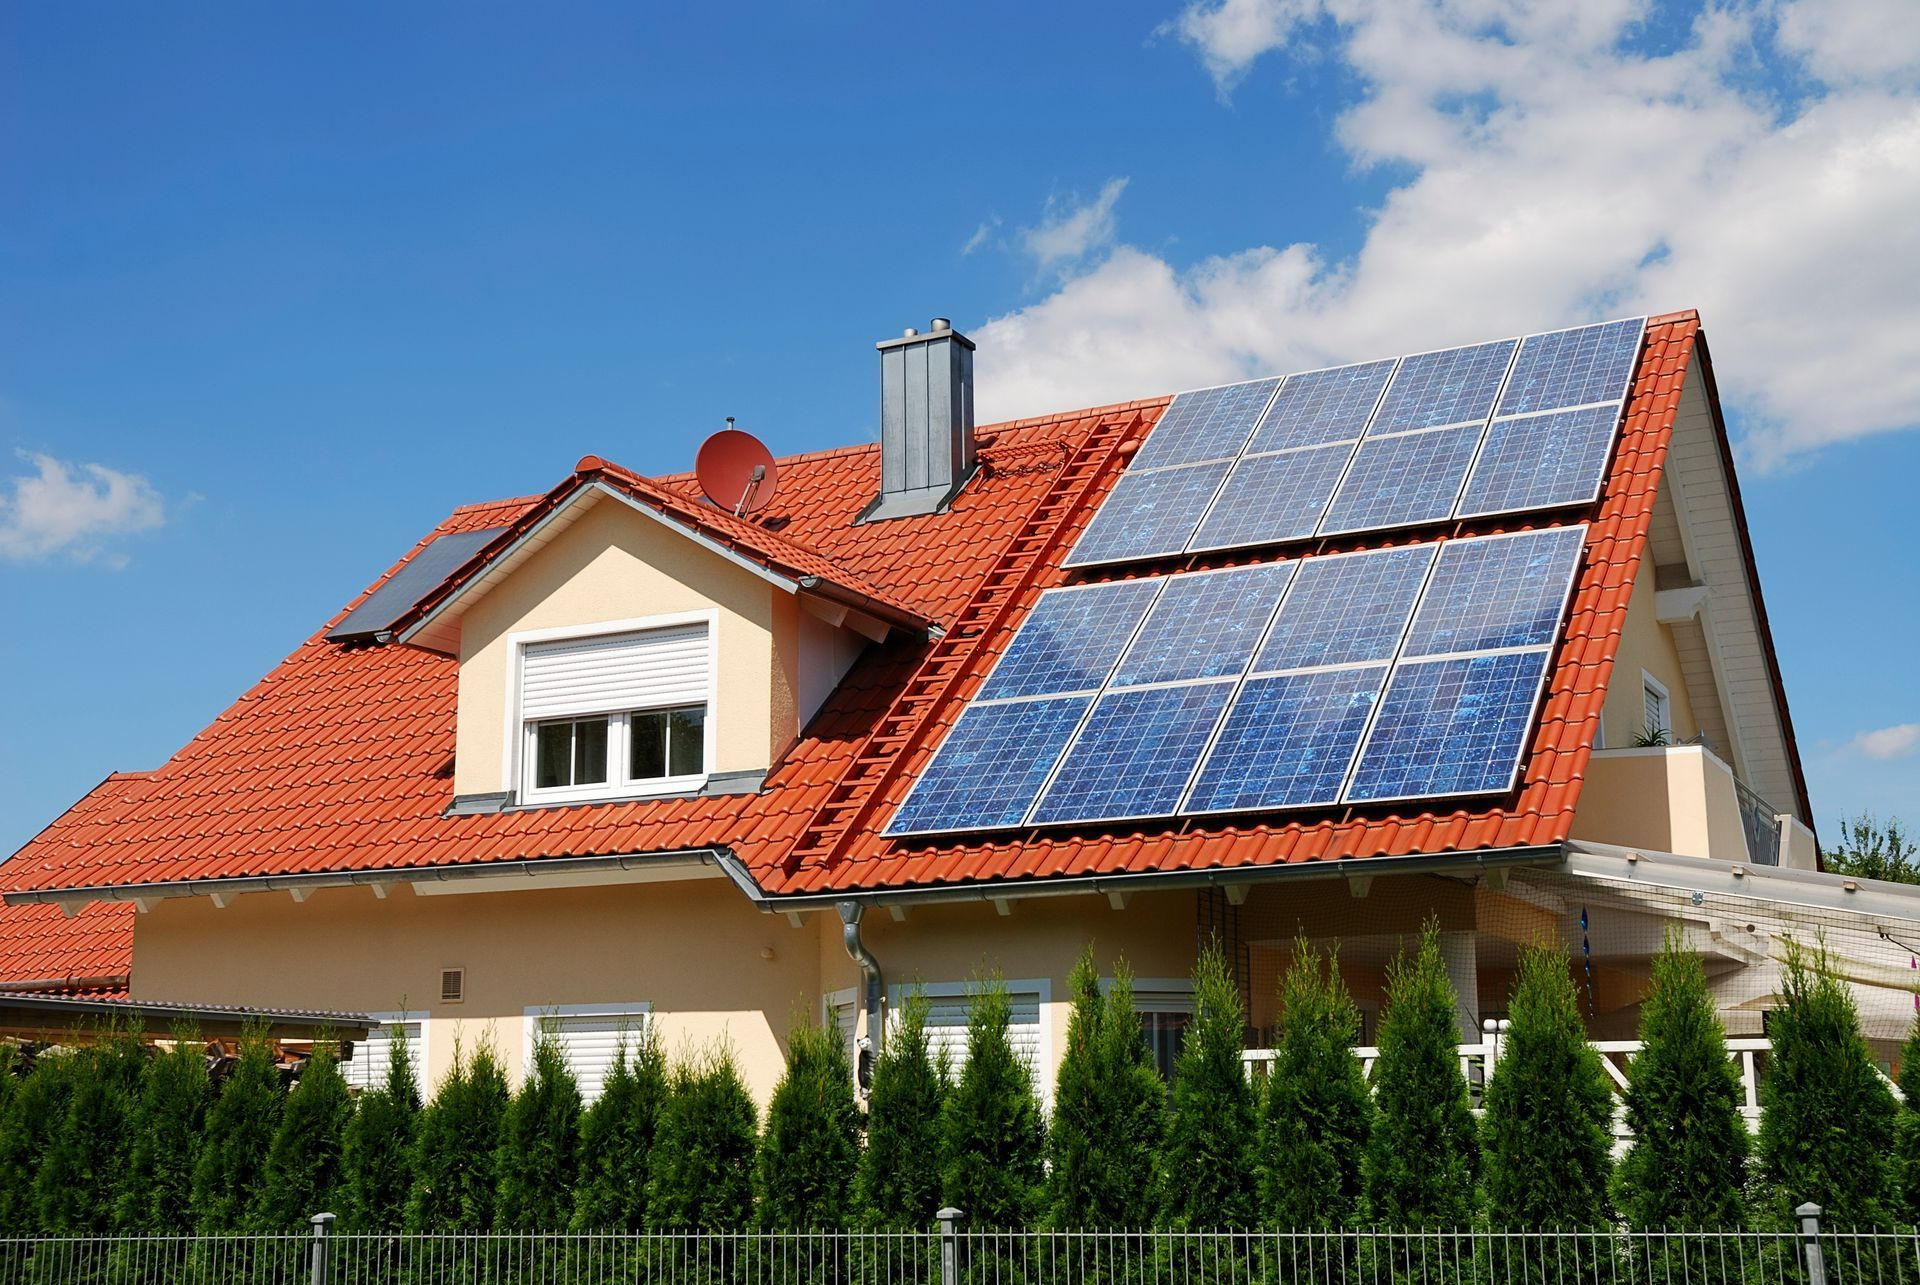 Panneaux photovoltaïques recouvrant une toiture en tuile